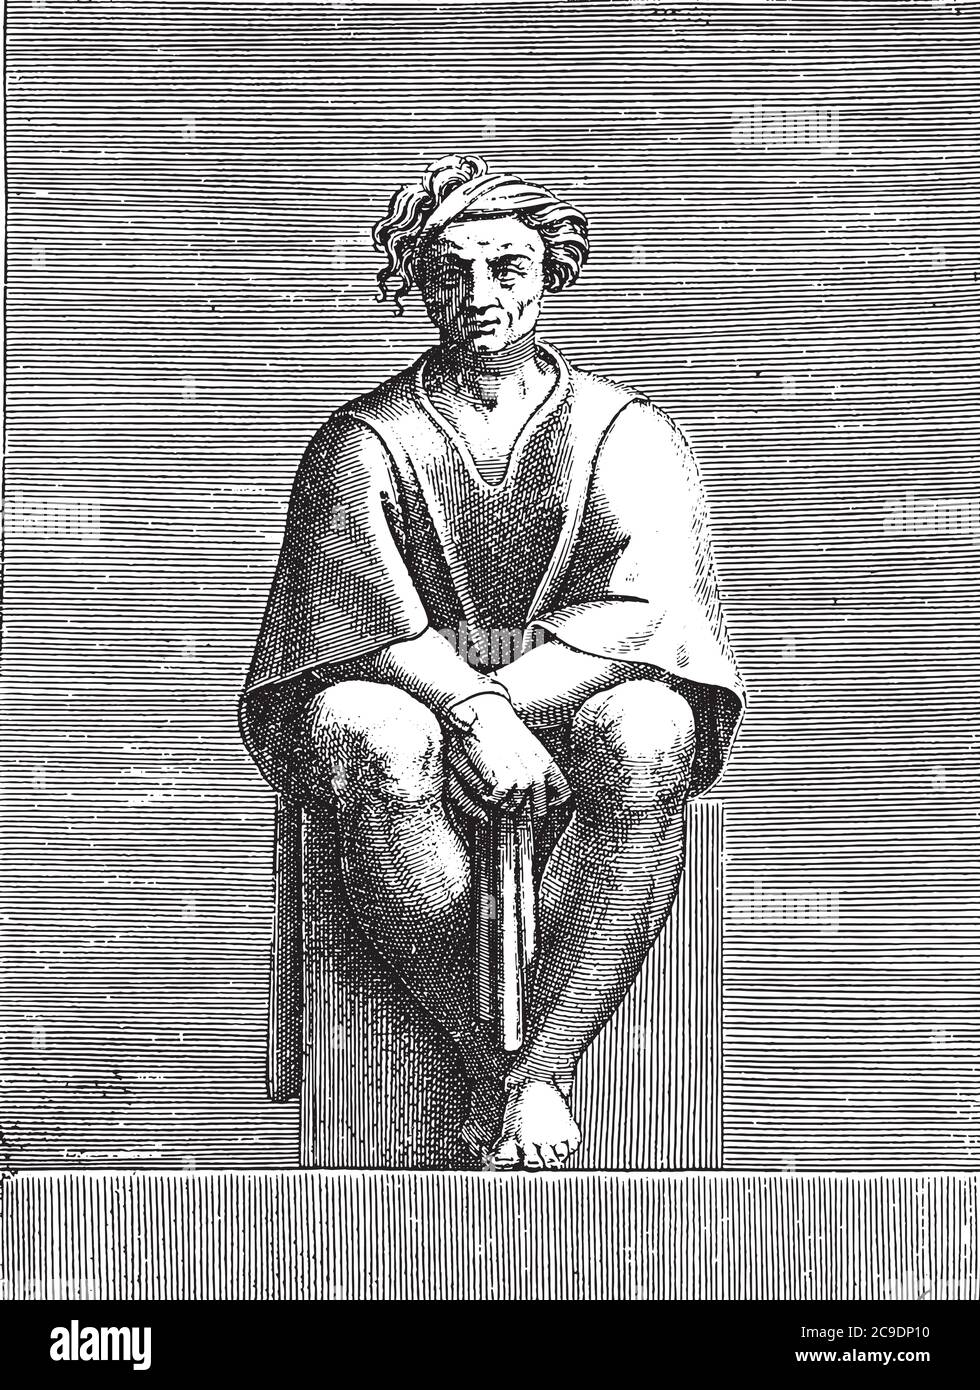 Sitzender Mann, Adamo Scultori, nach Michelangelo, 1585, Vintage-Gravur. Stock Vektor